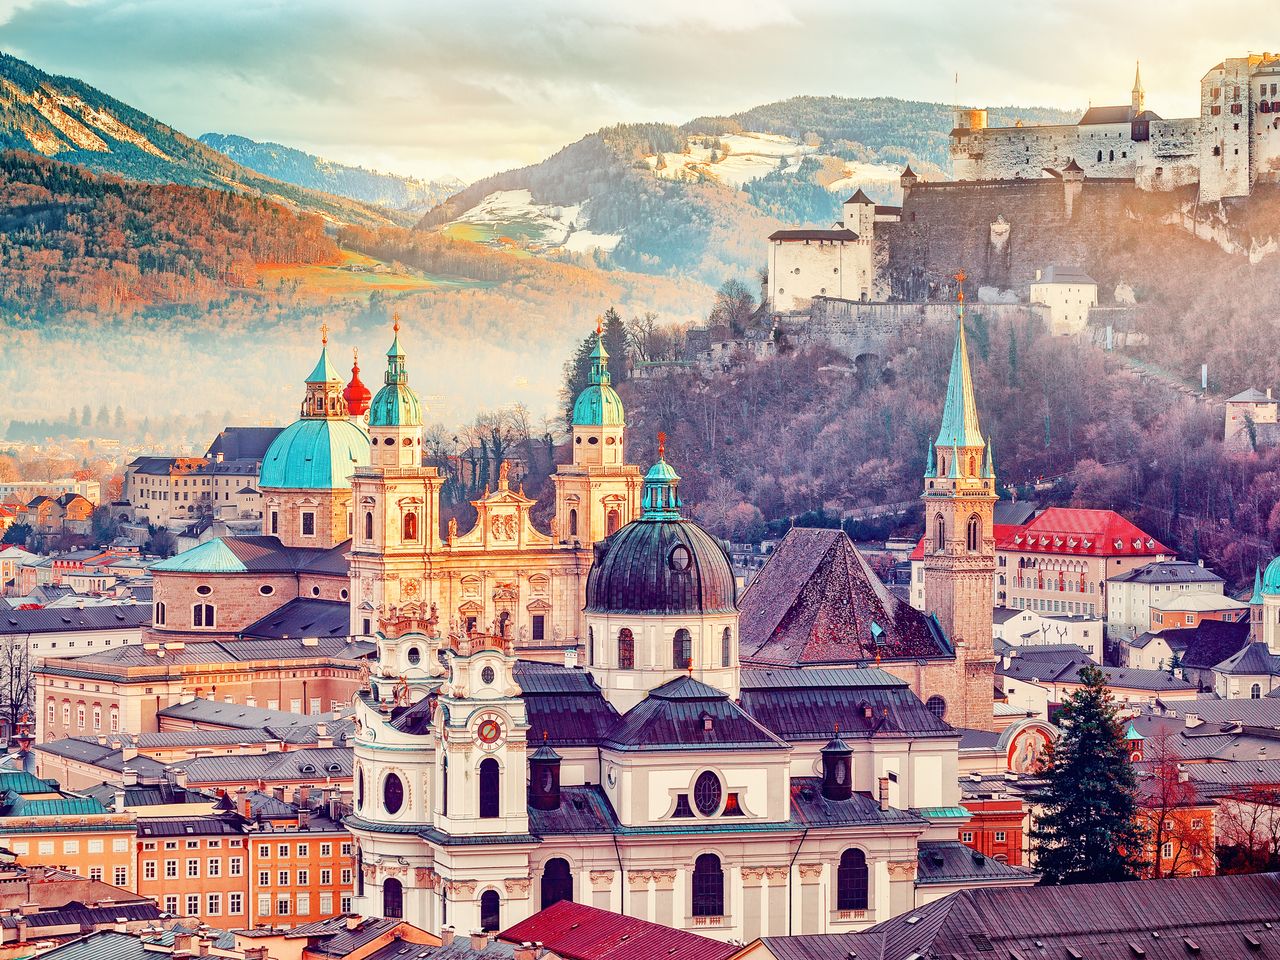 Das schöne Salzburg erleben - 3 Tage mit Frühstück